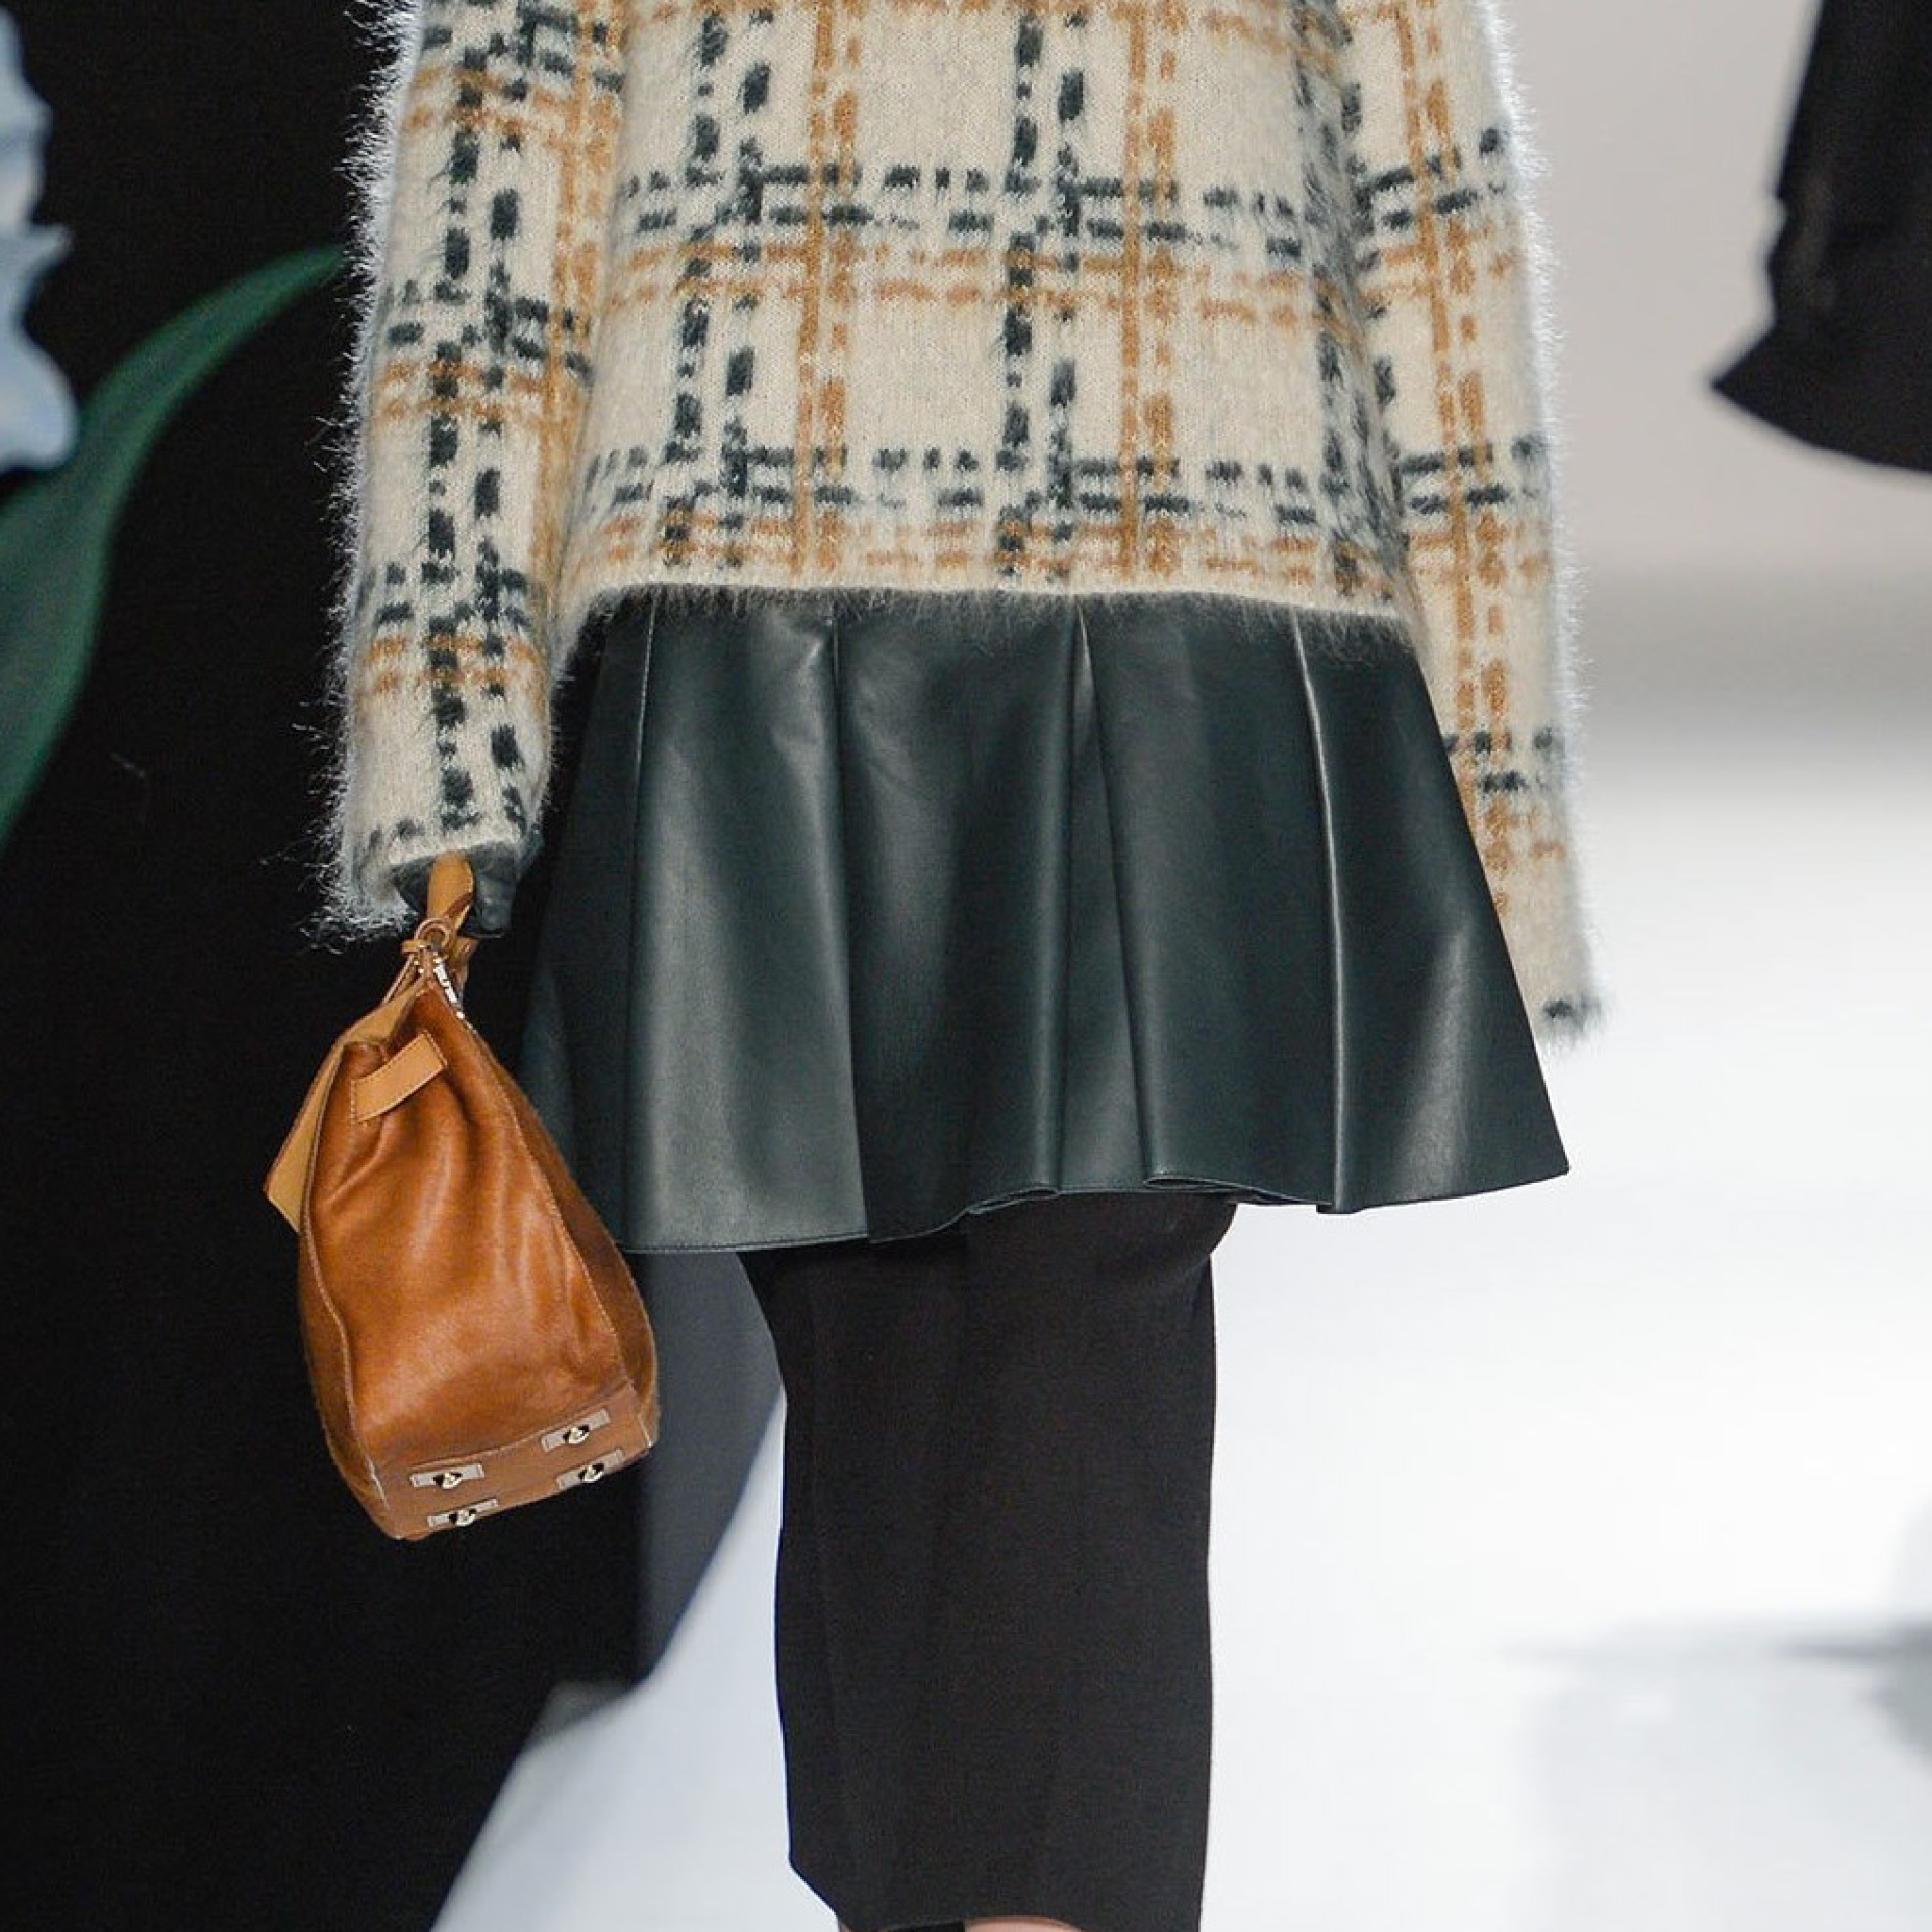 Exemple pli creux - Mulberry Fall 2013 - Ajouter plis sur patron couture